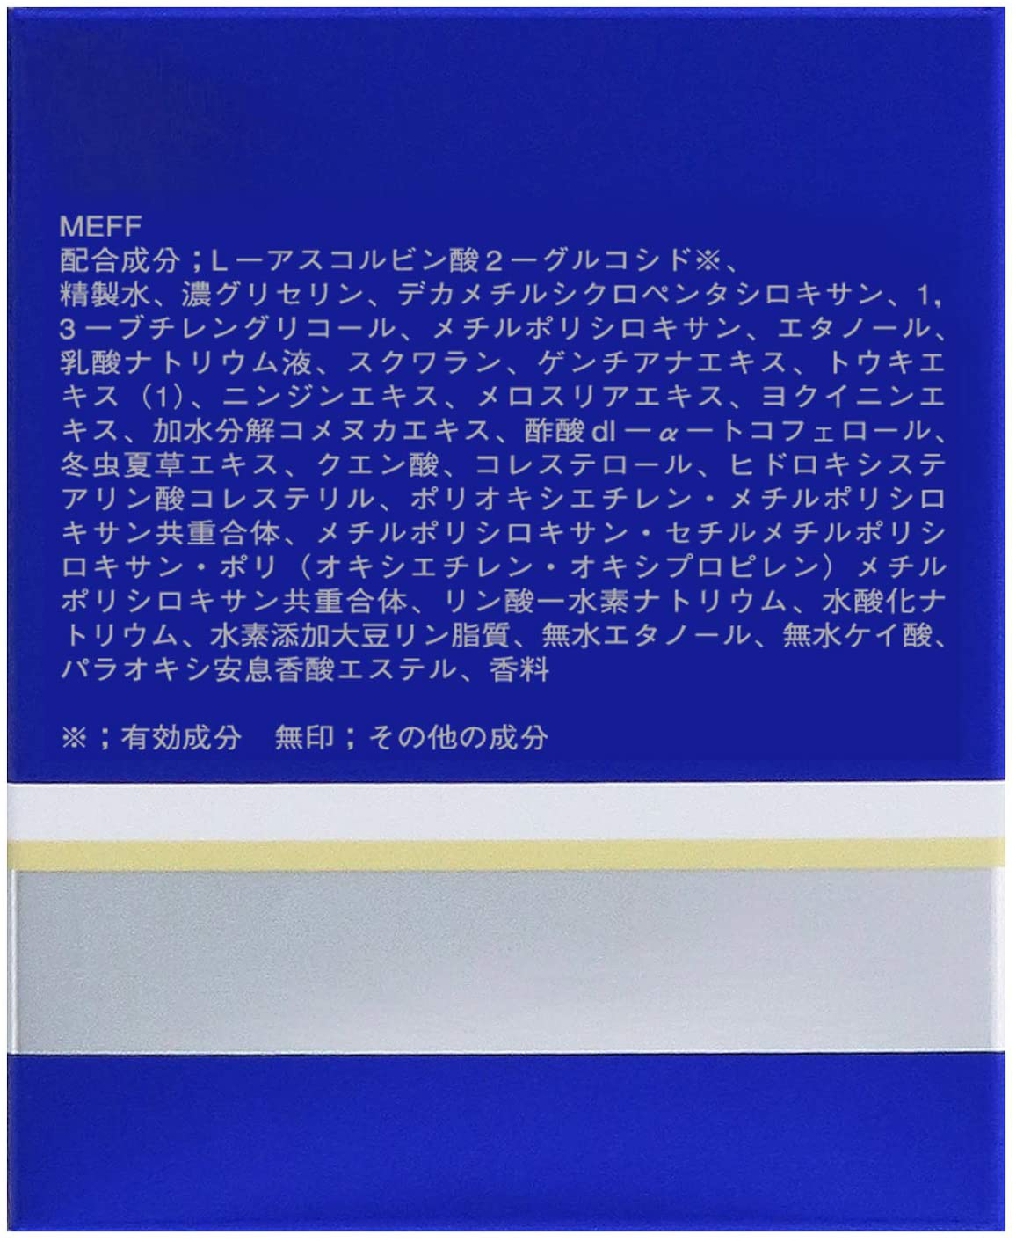 雪肌精(SEKKISEI) 薬用 雪肌精 クリームの商品画像11 